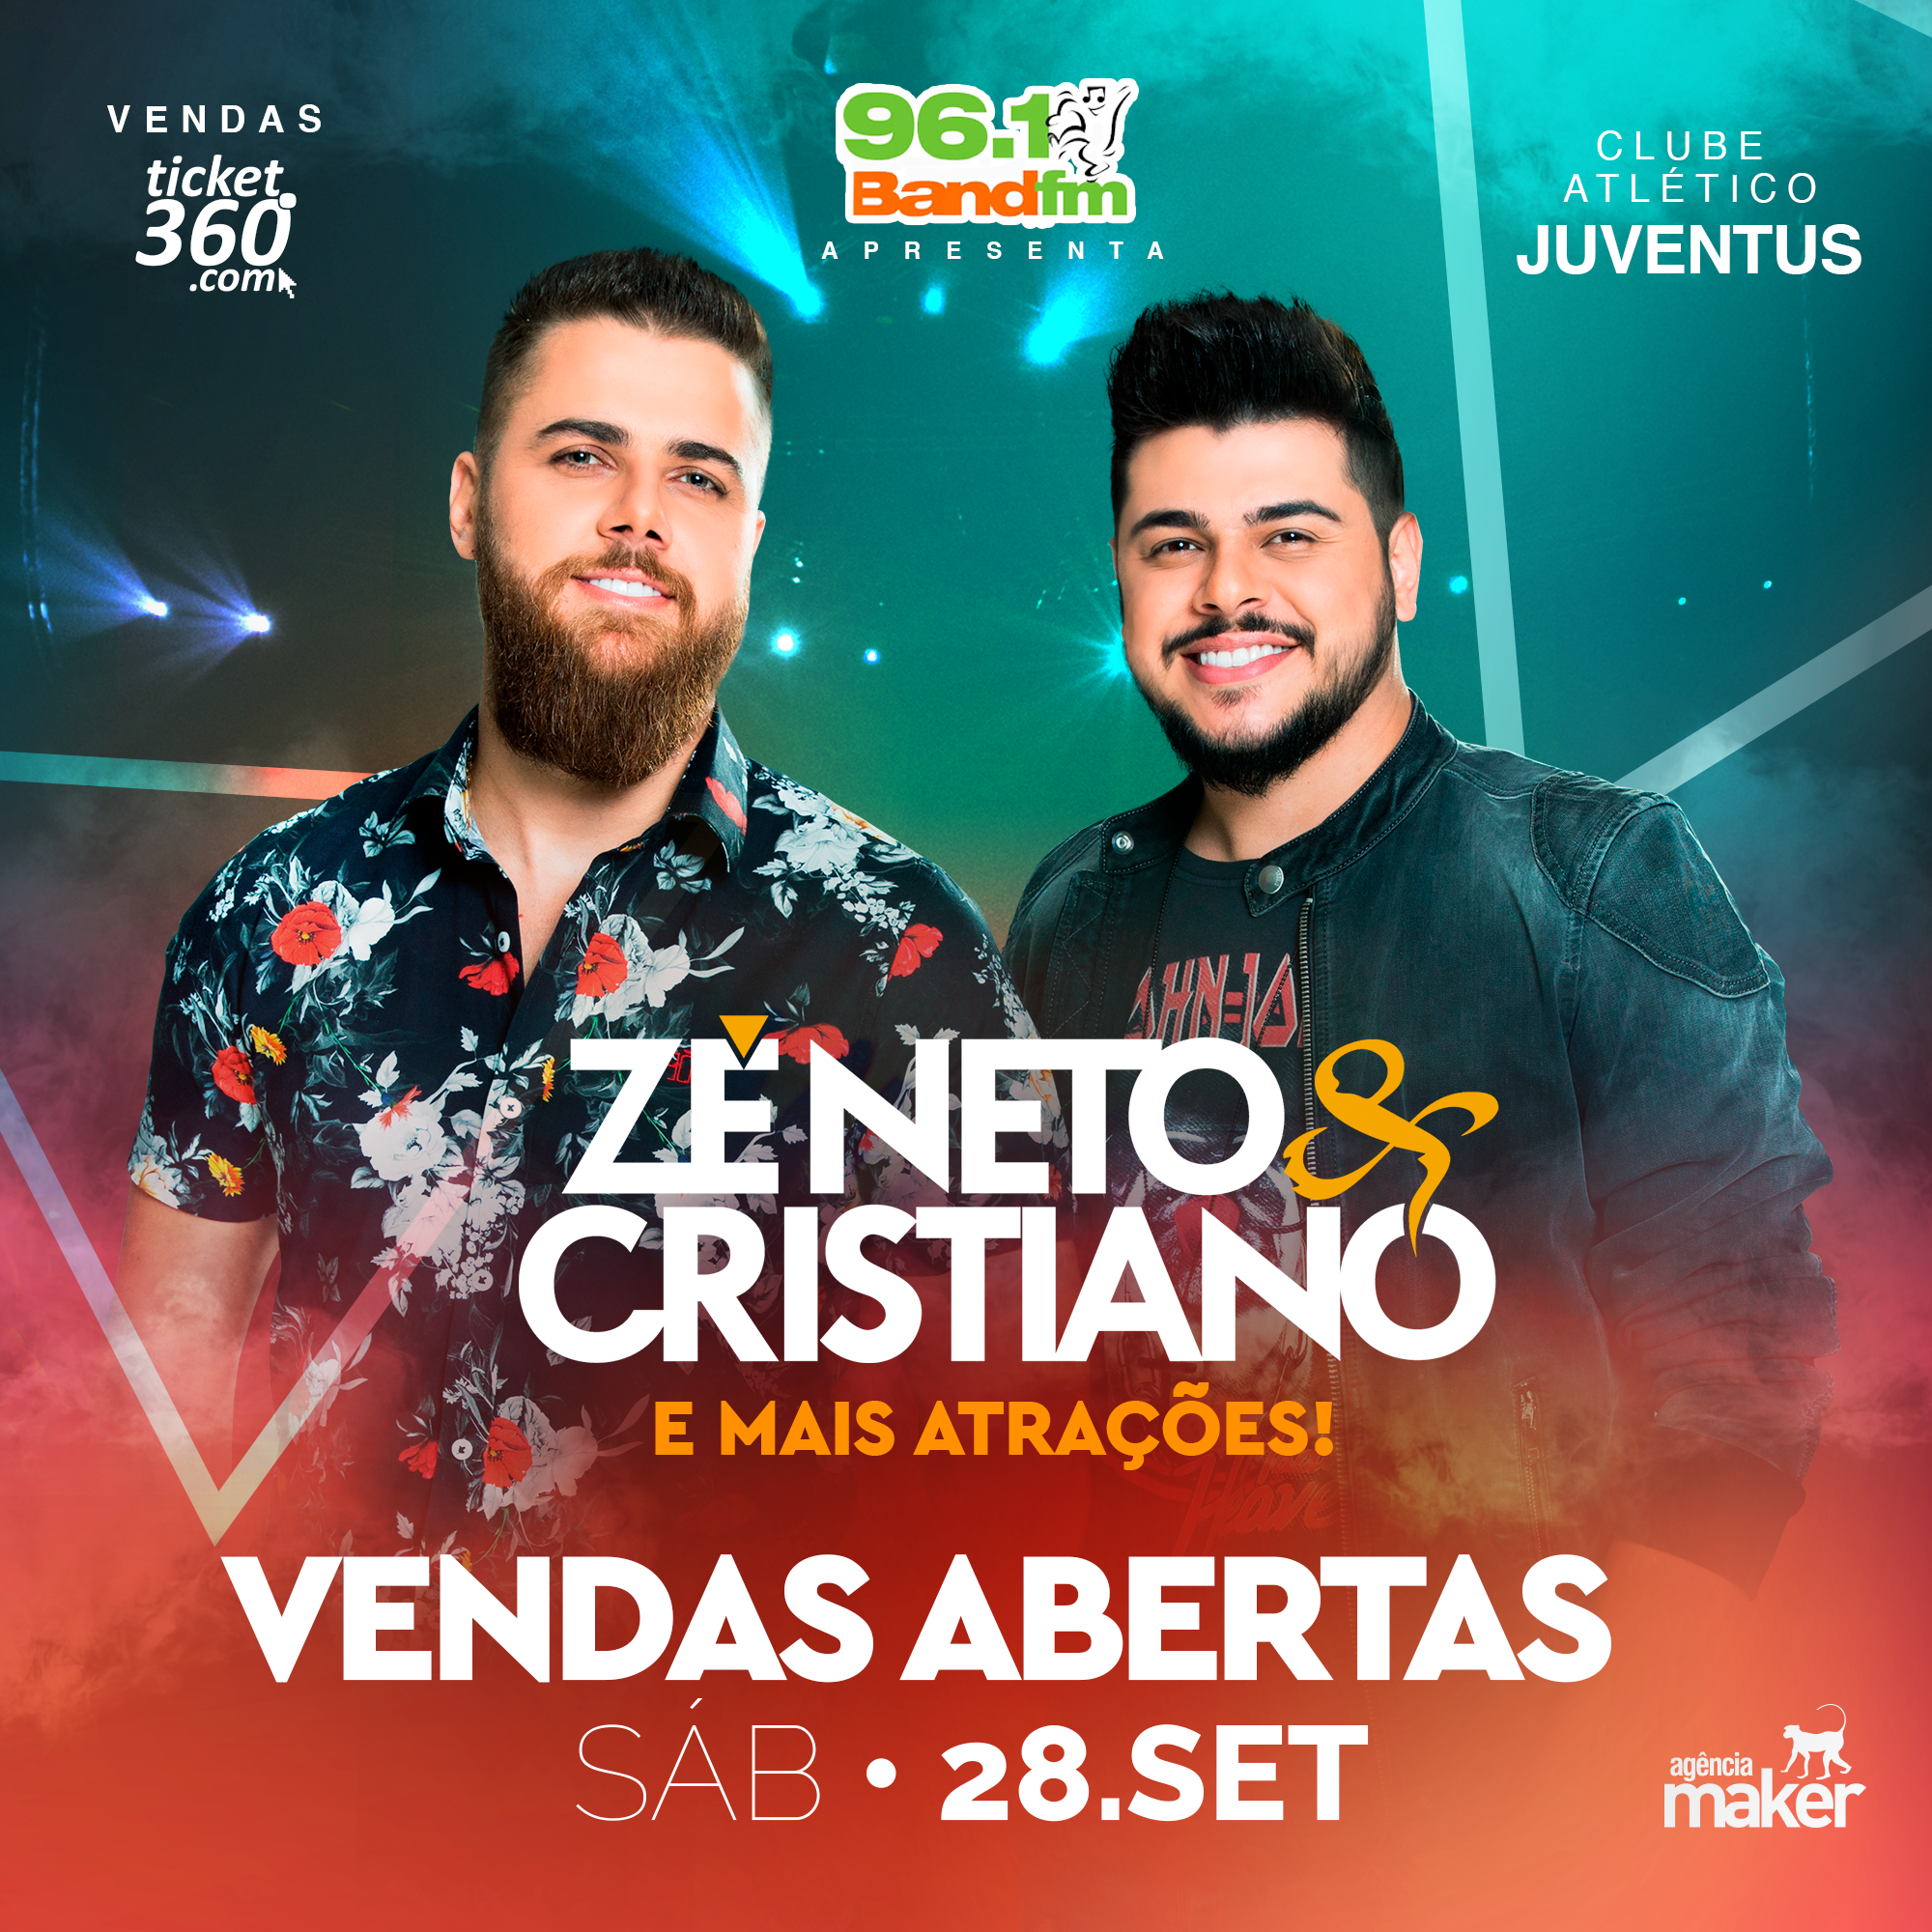 ZÉ NETO & CRISTIANO - Este evento não é organizado pelo Clube Atlético Juventus